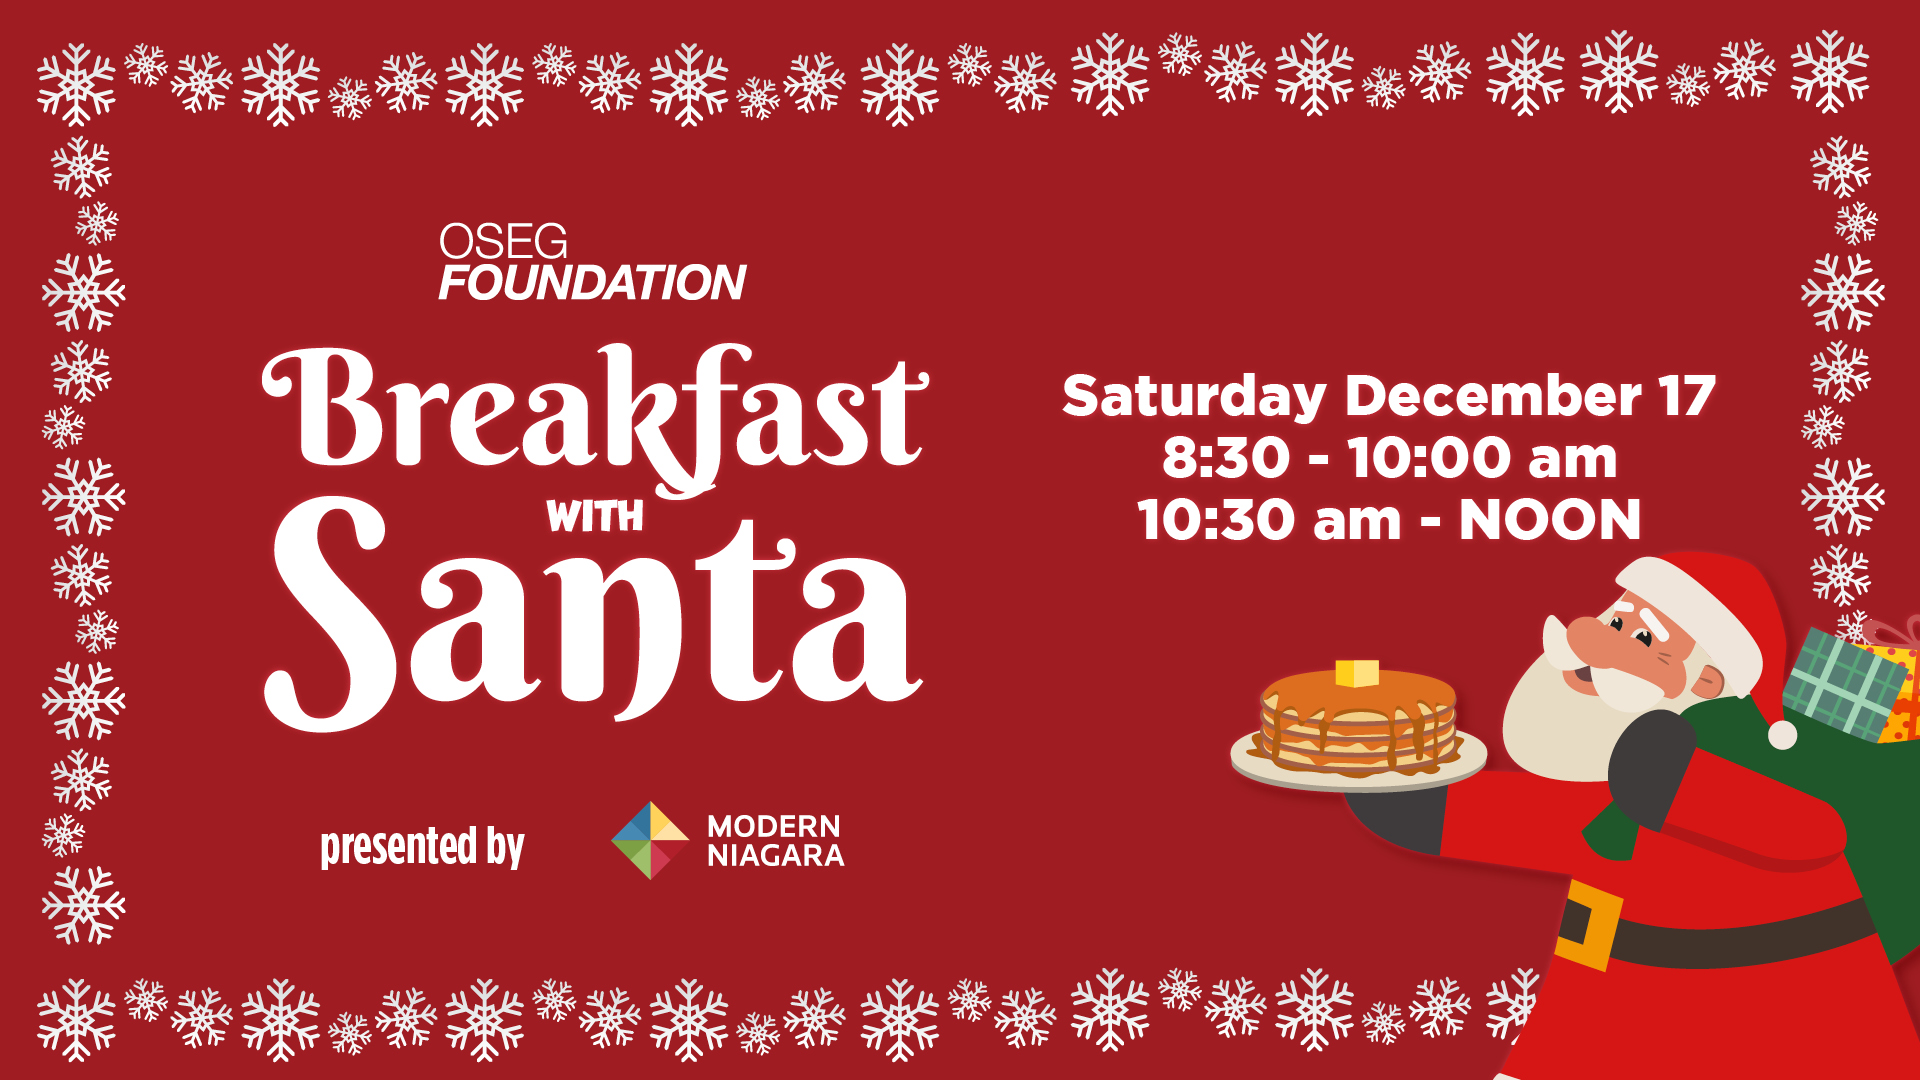 Breakfast with Santa presented by Moder Niagara Saturday Dec 17 2022